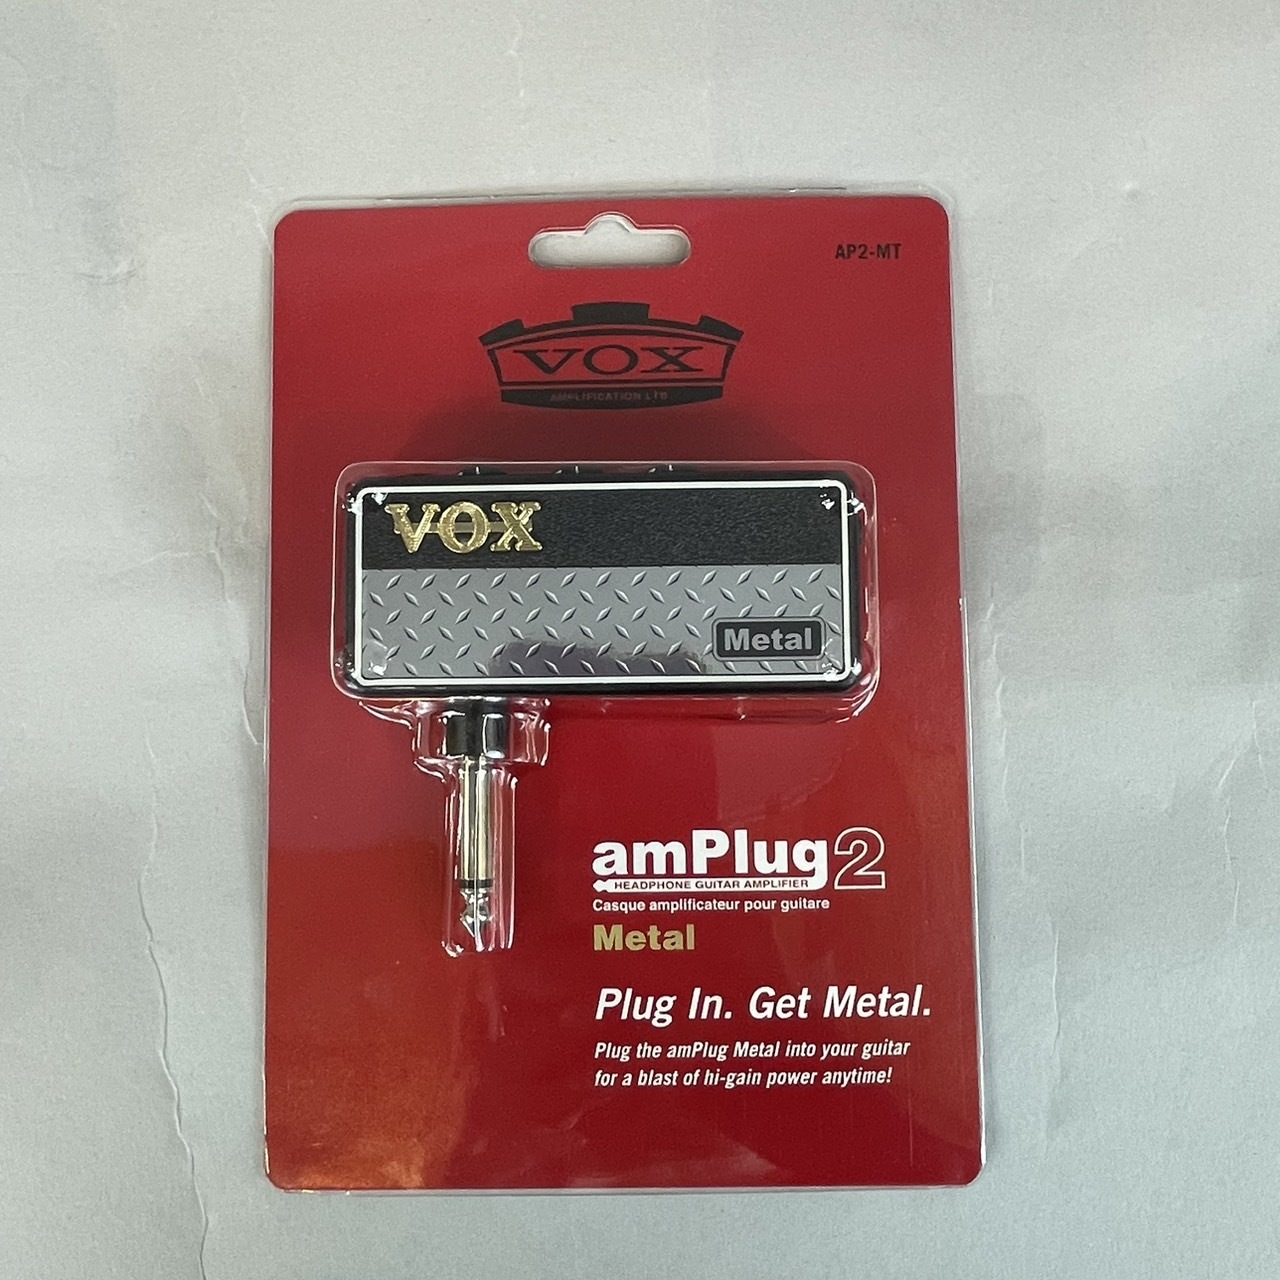 Vox amPlug 2 Metal Headphone Guitar Amp - 4959112125100